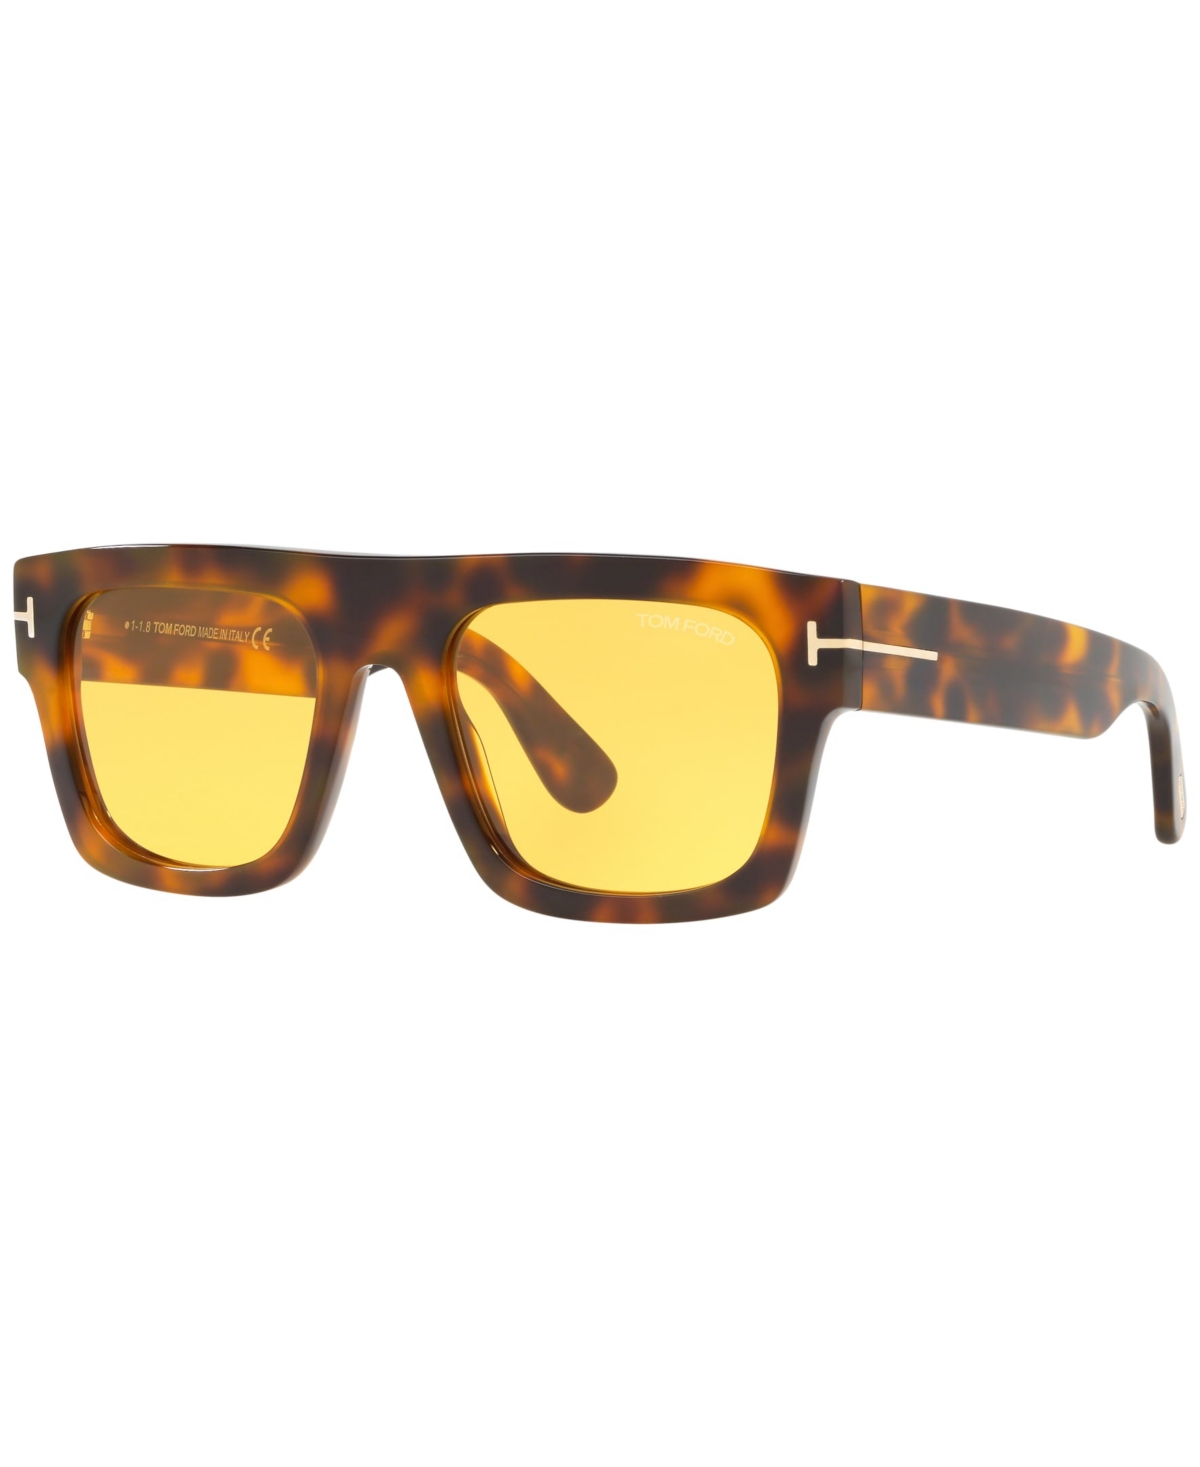 Tom Ford Men's Sunglasses, Ft0711 In Tortoise